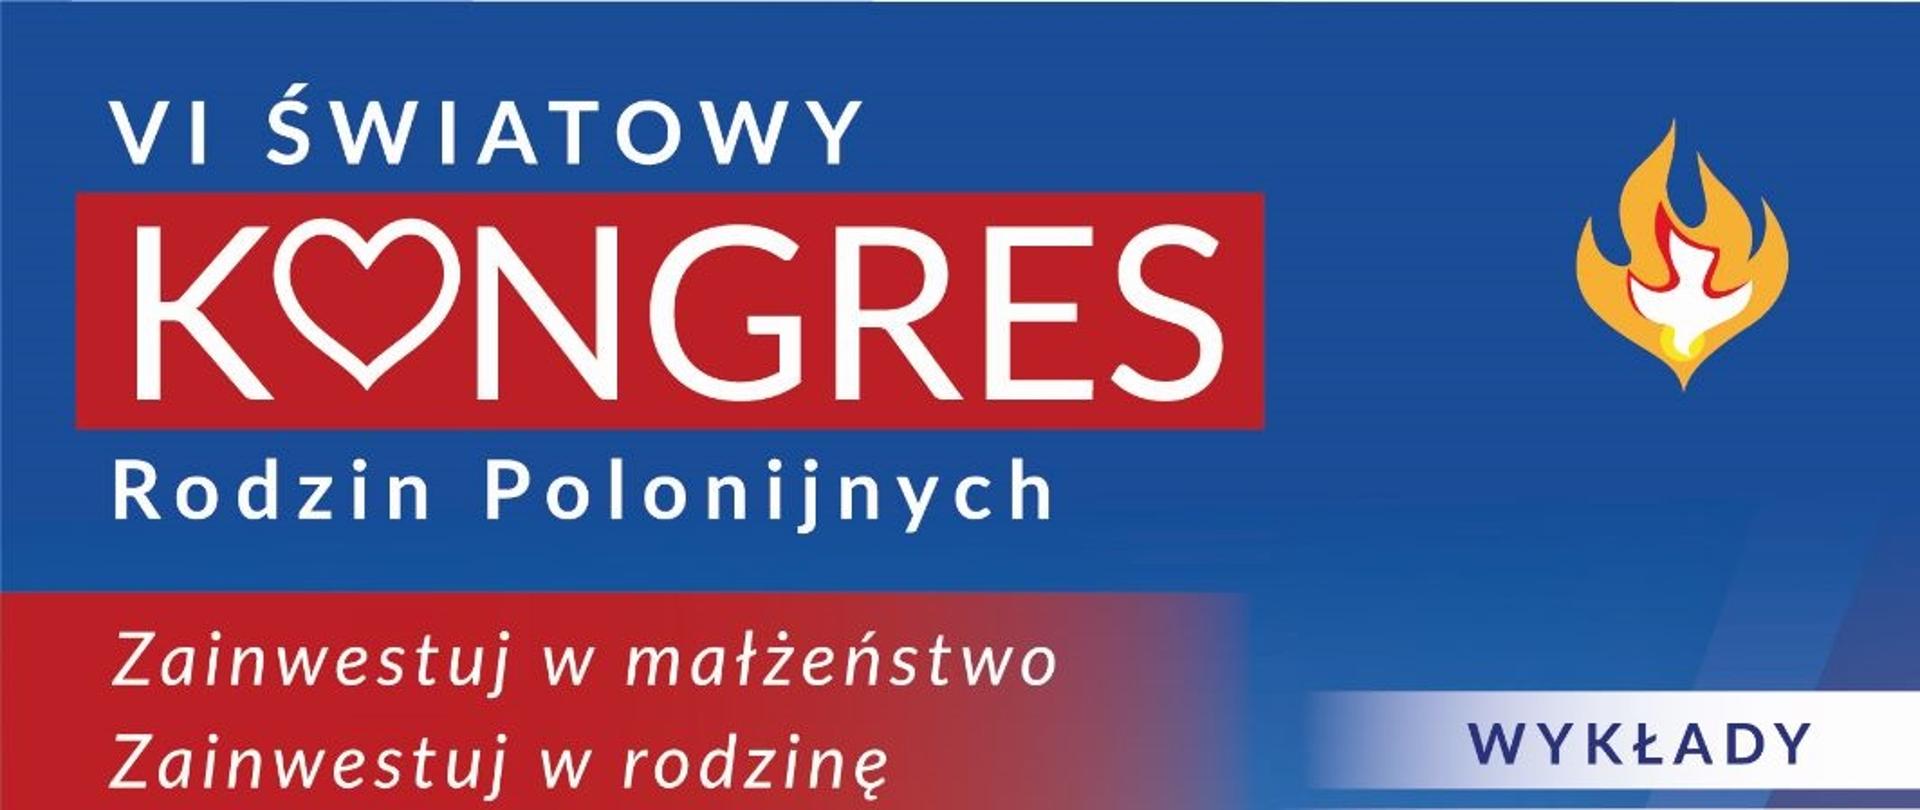 Kongres rodzin polonijnych